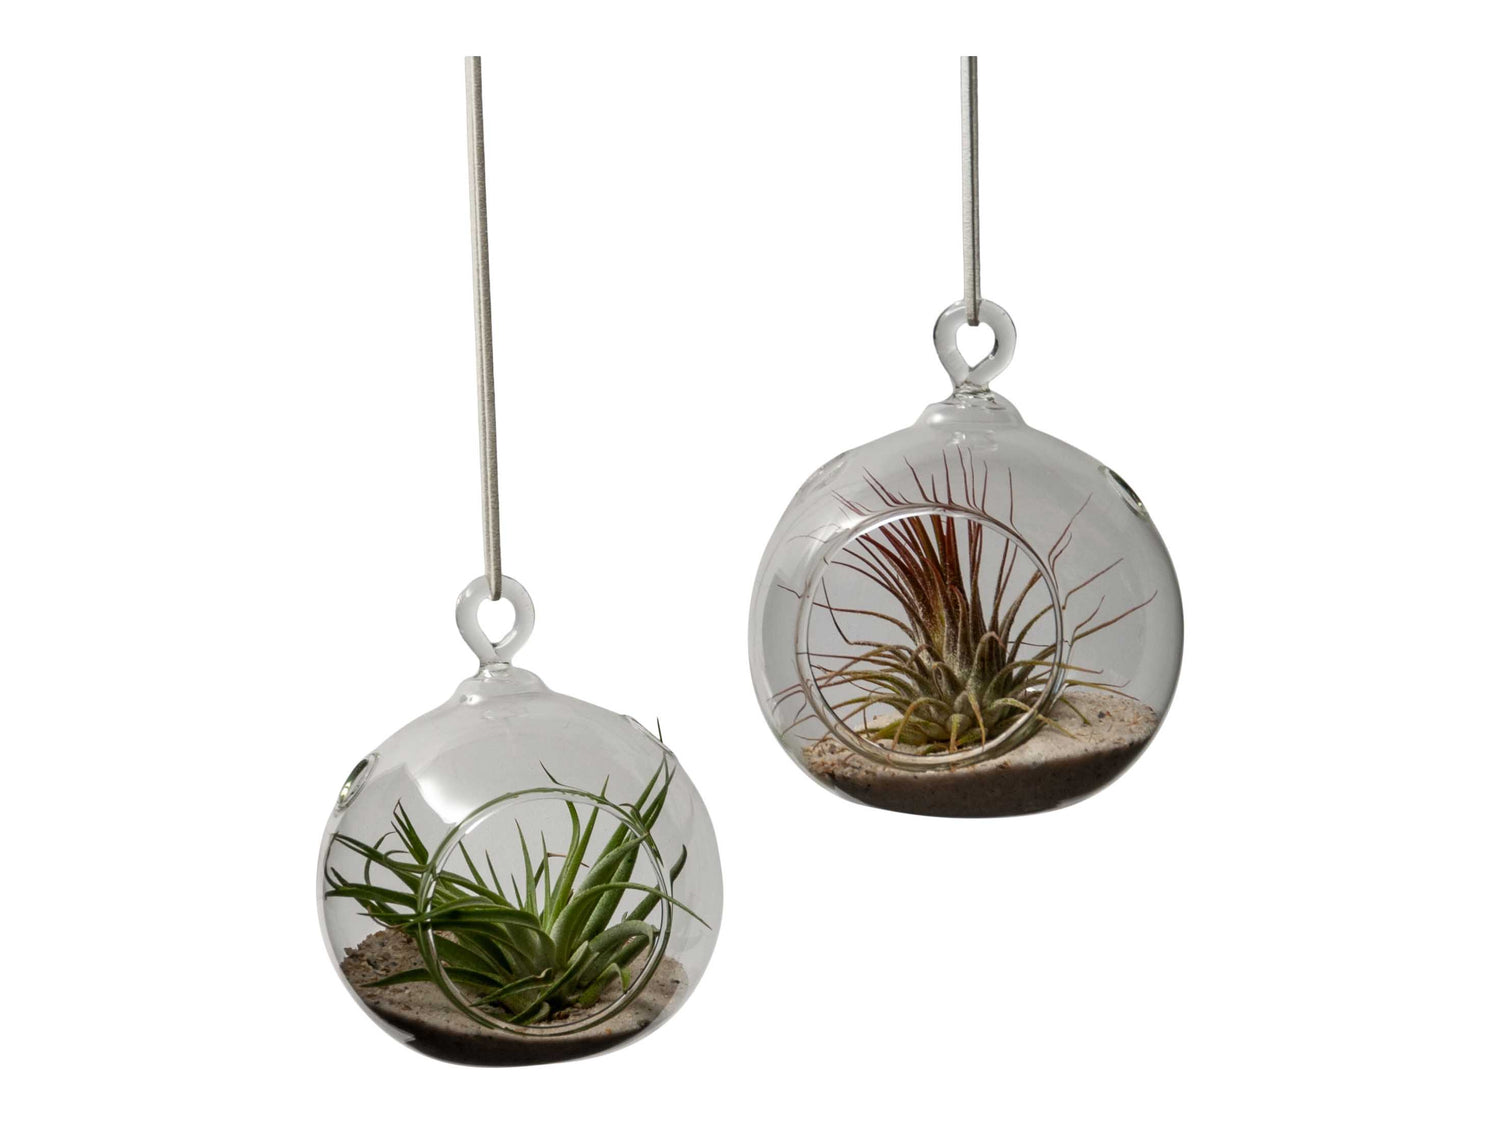 2 bolvormige glazen raamhangers van 10cm met aan de voorkant een opening en 2 plantjes